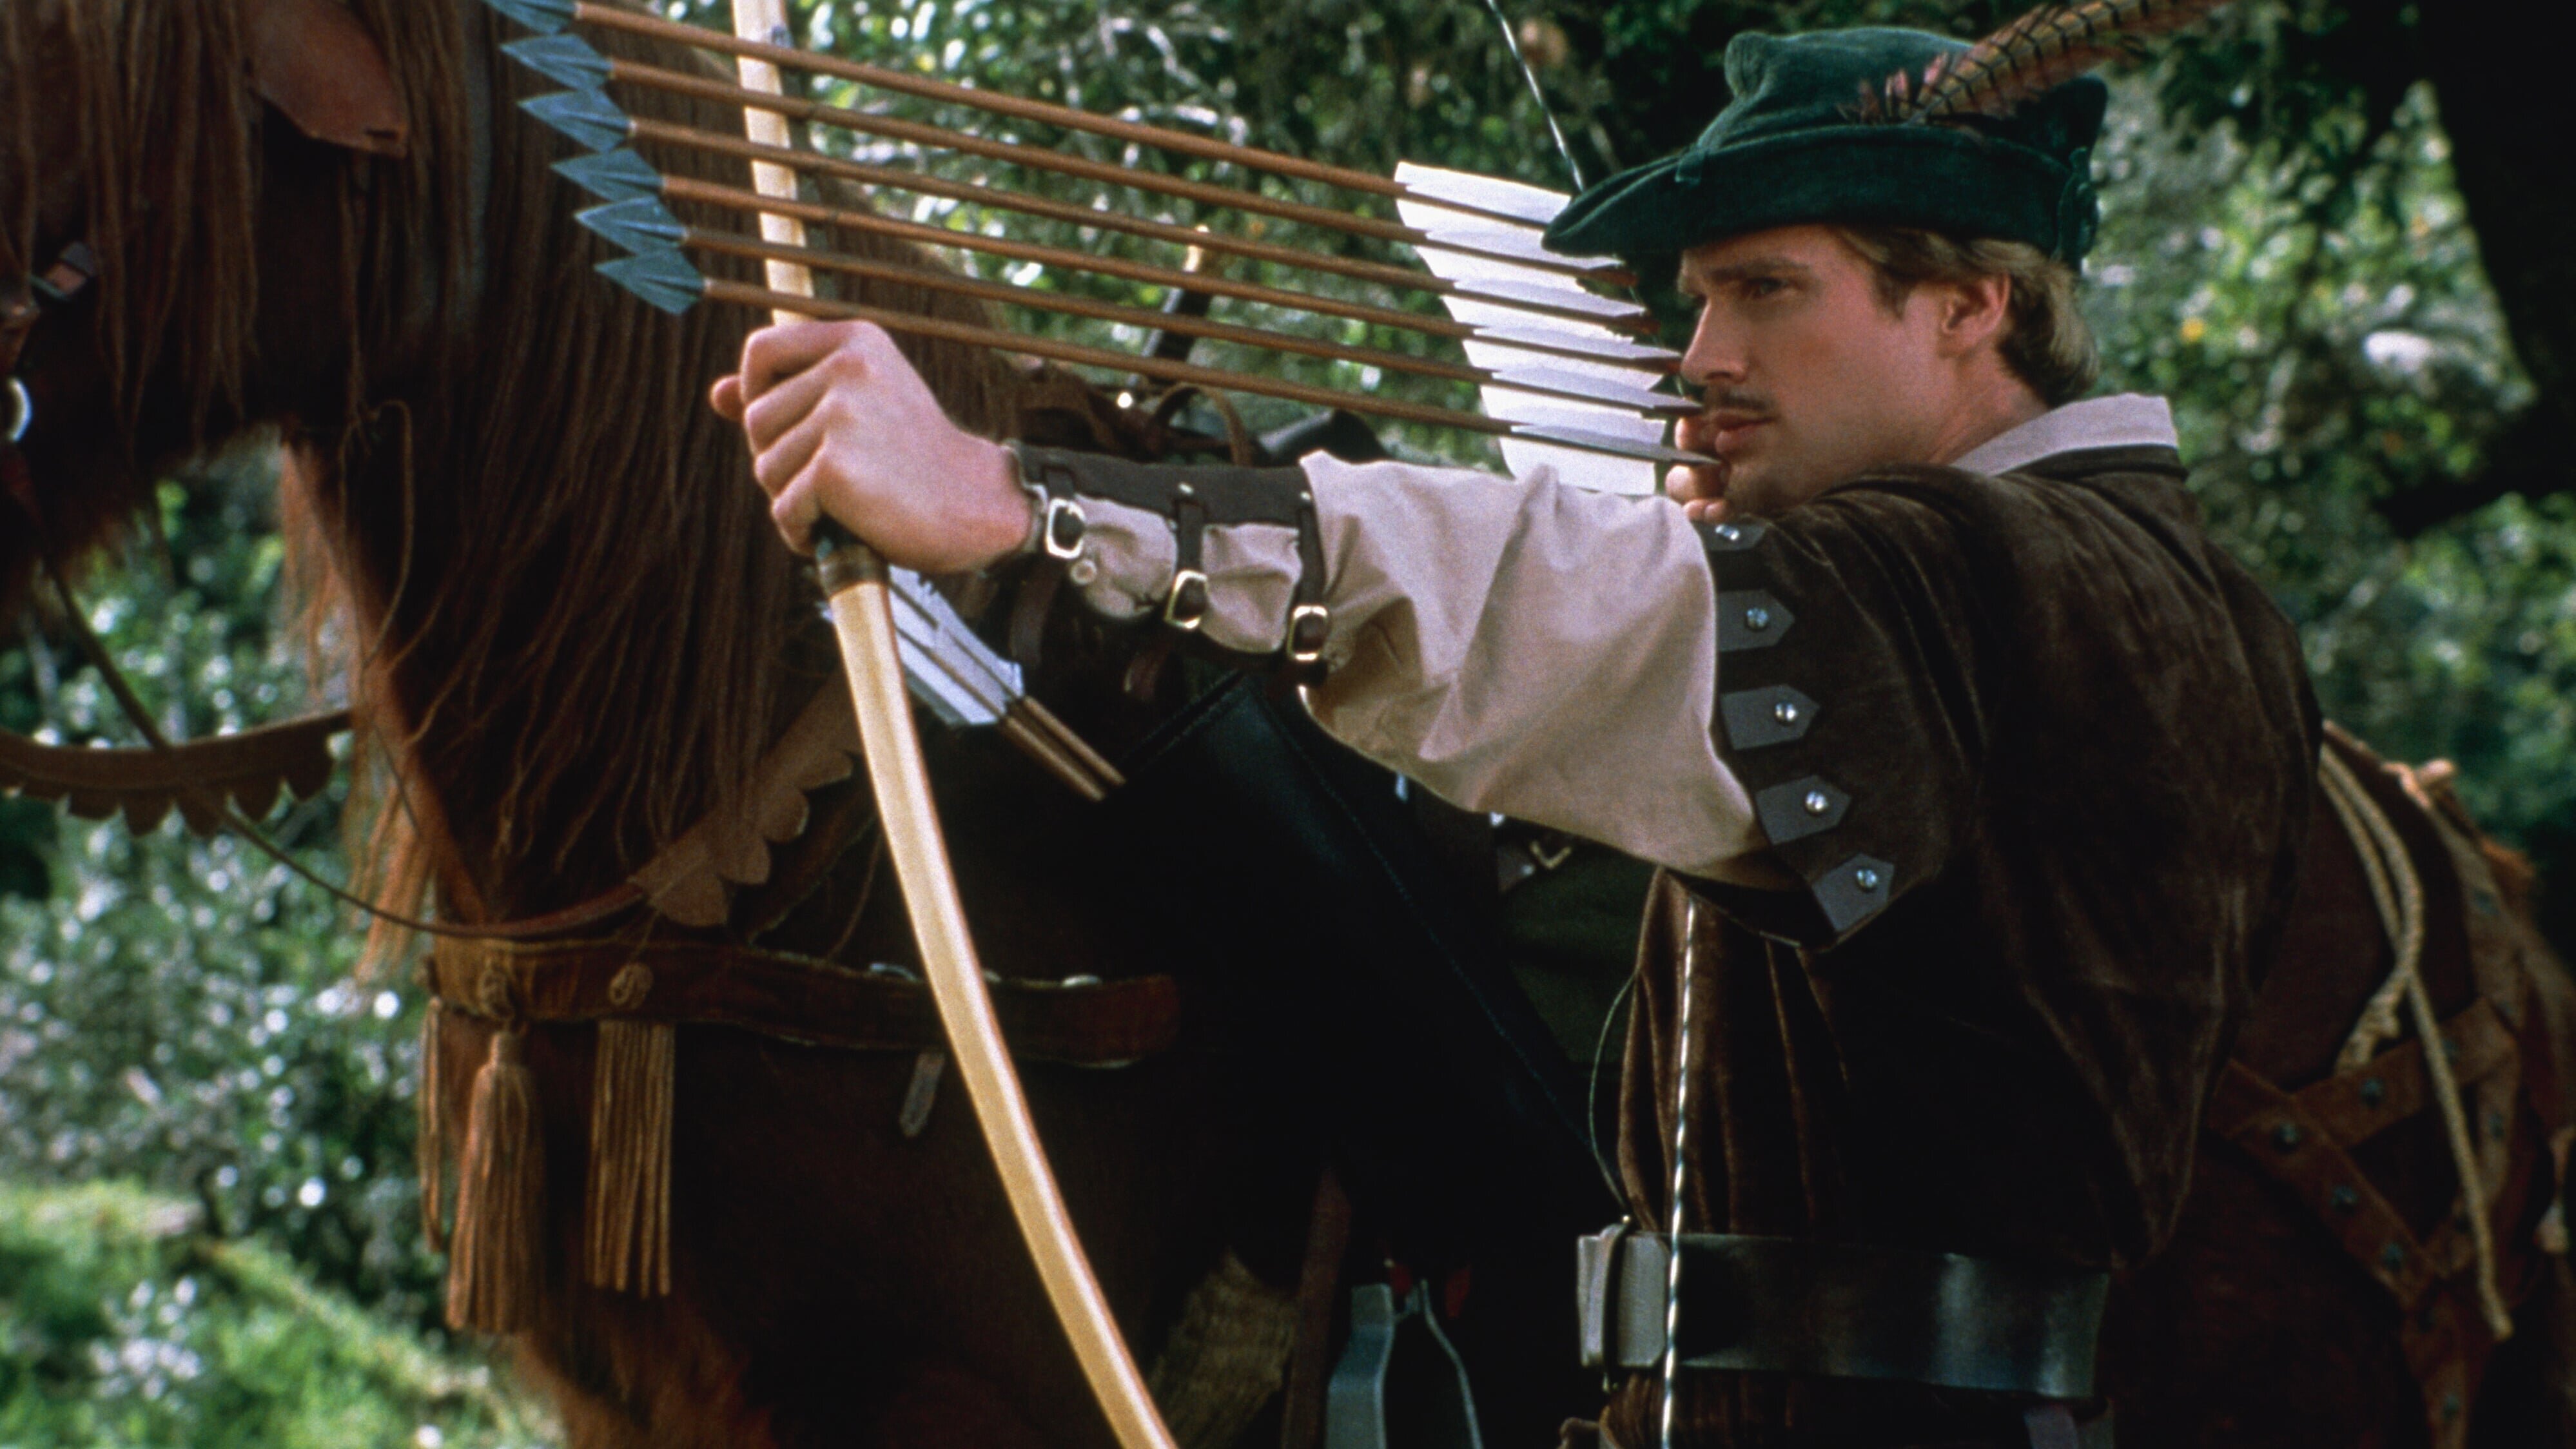 Robin Hood – Helden in Strumpfhosen